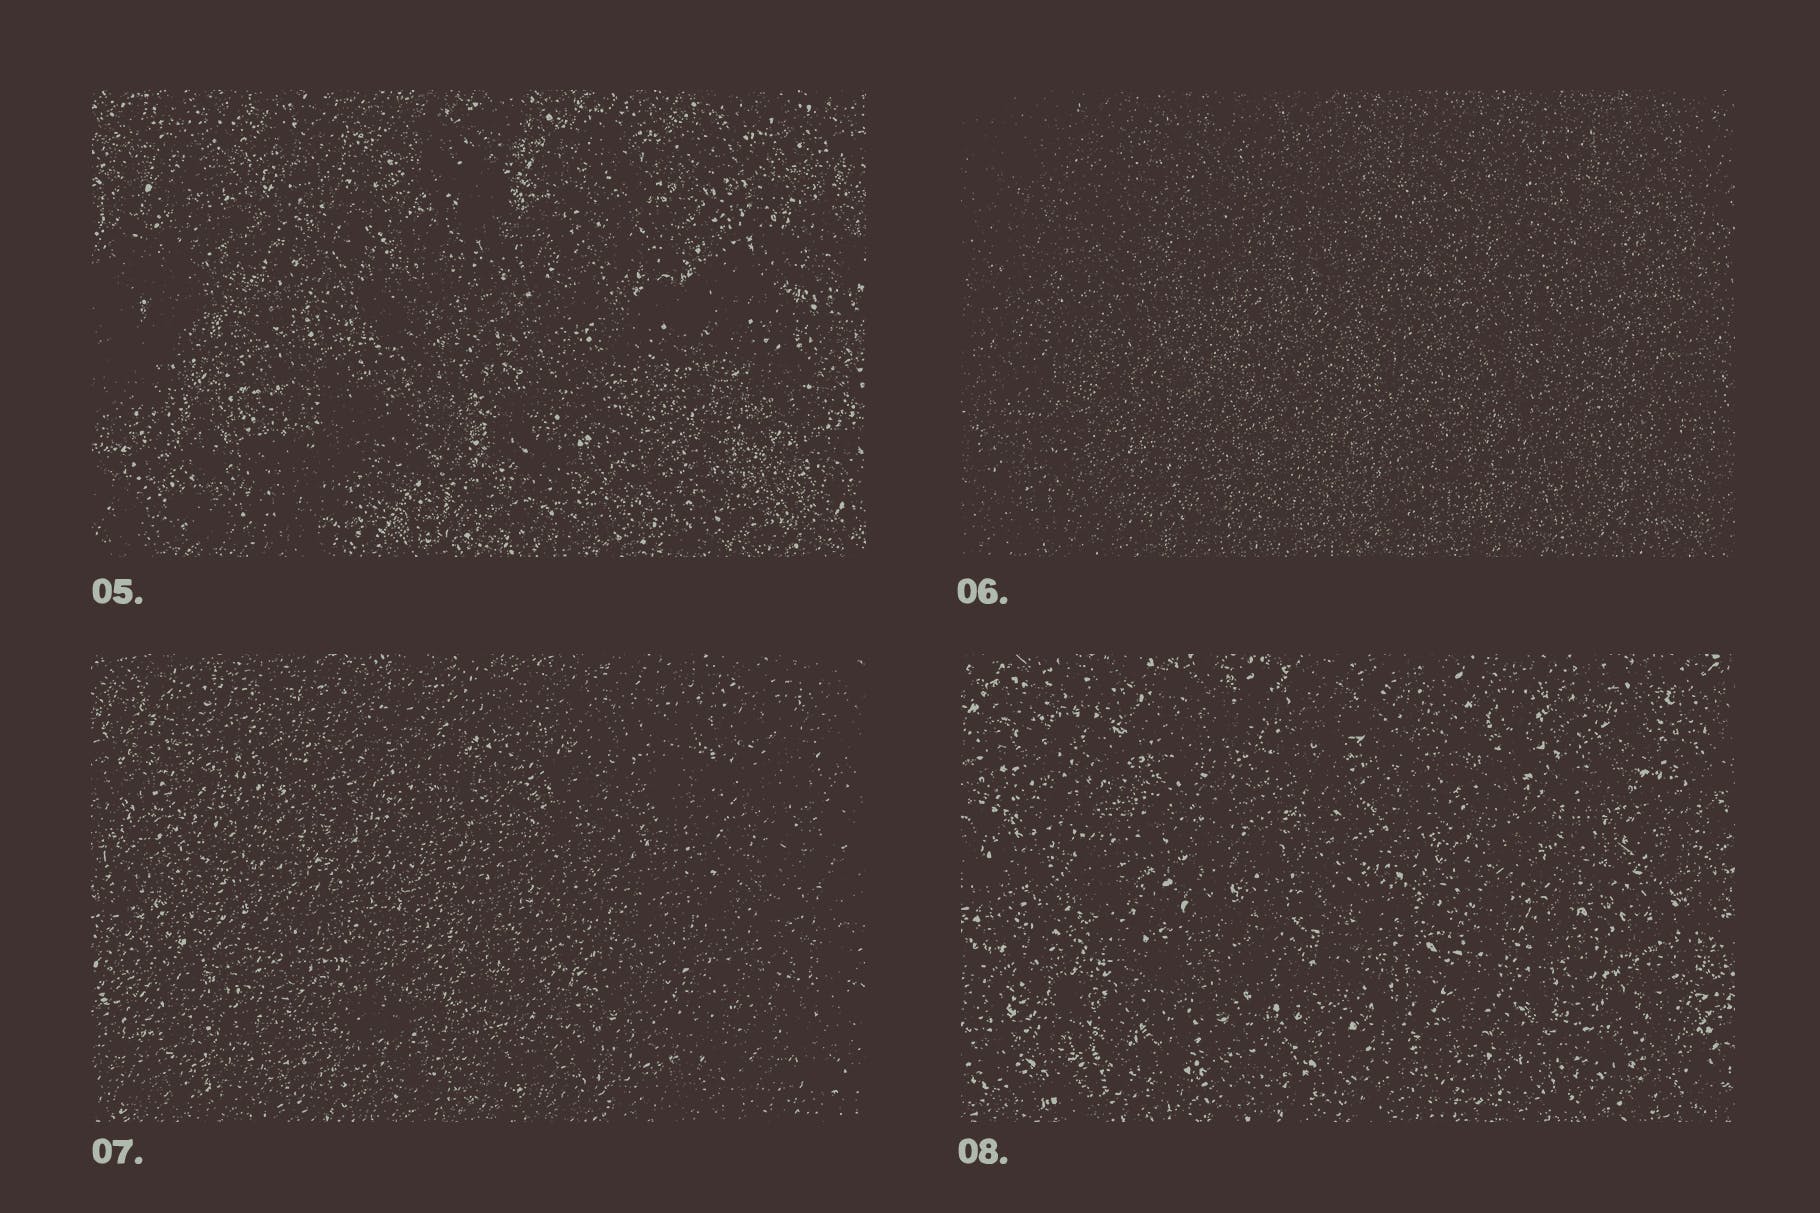 12个粒状磨砂效果矢量纹理背景素材 Vector Grainy Textures x12插图1